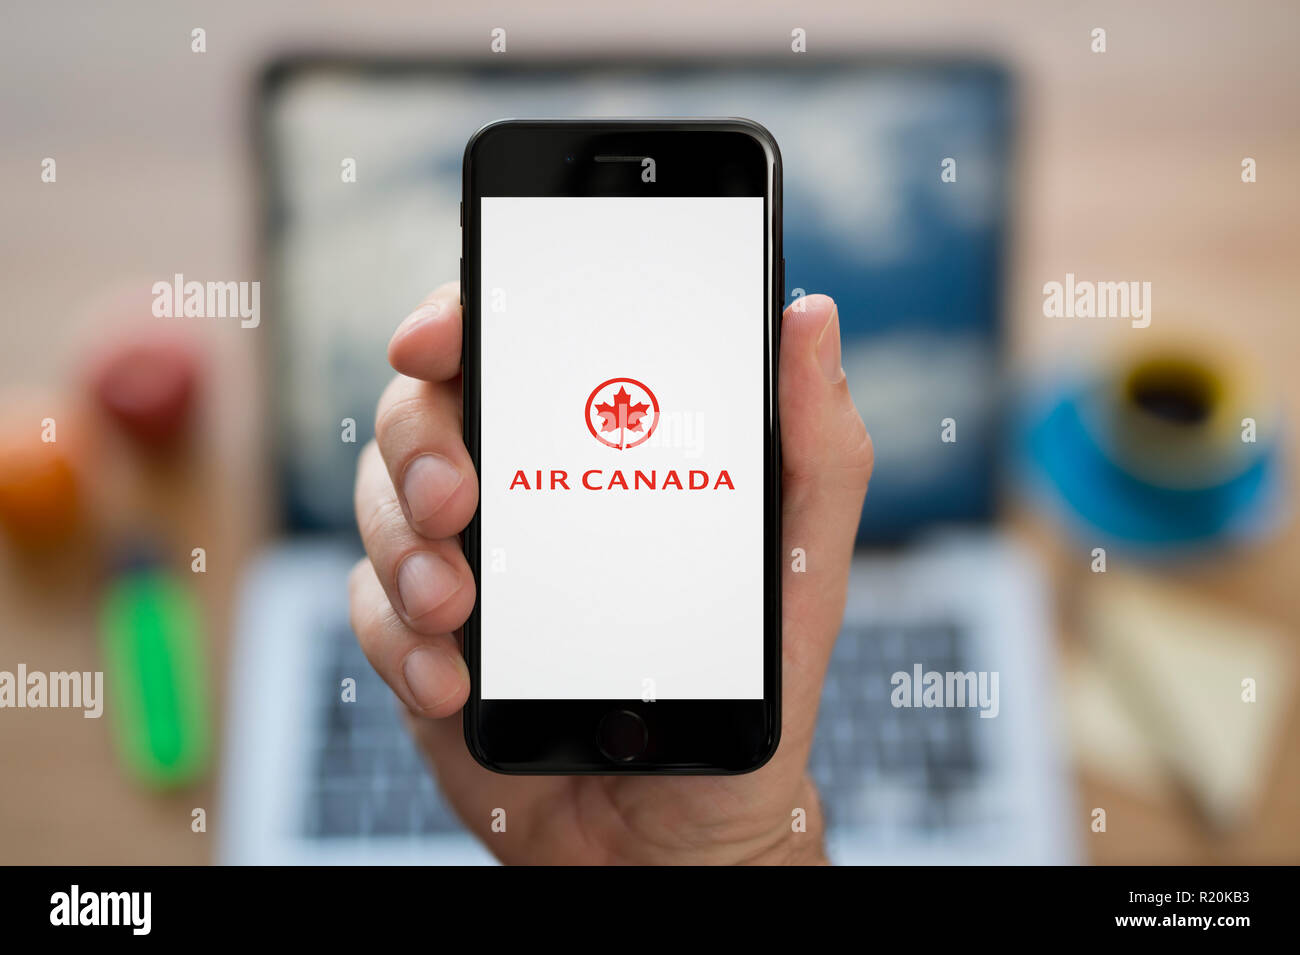 Ein Mann schaut auf seinem iPhone die zeigt die Air Canada logo, während saß an seinem Computer Schreibtisch (nur redaktionelle Nutzung). Stockfoto